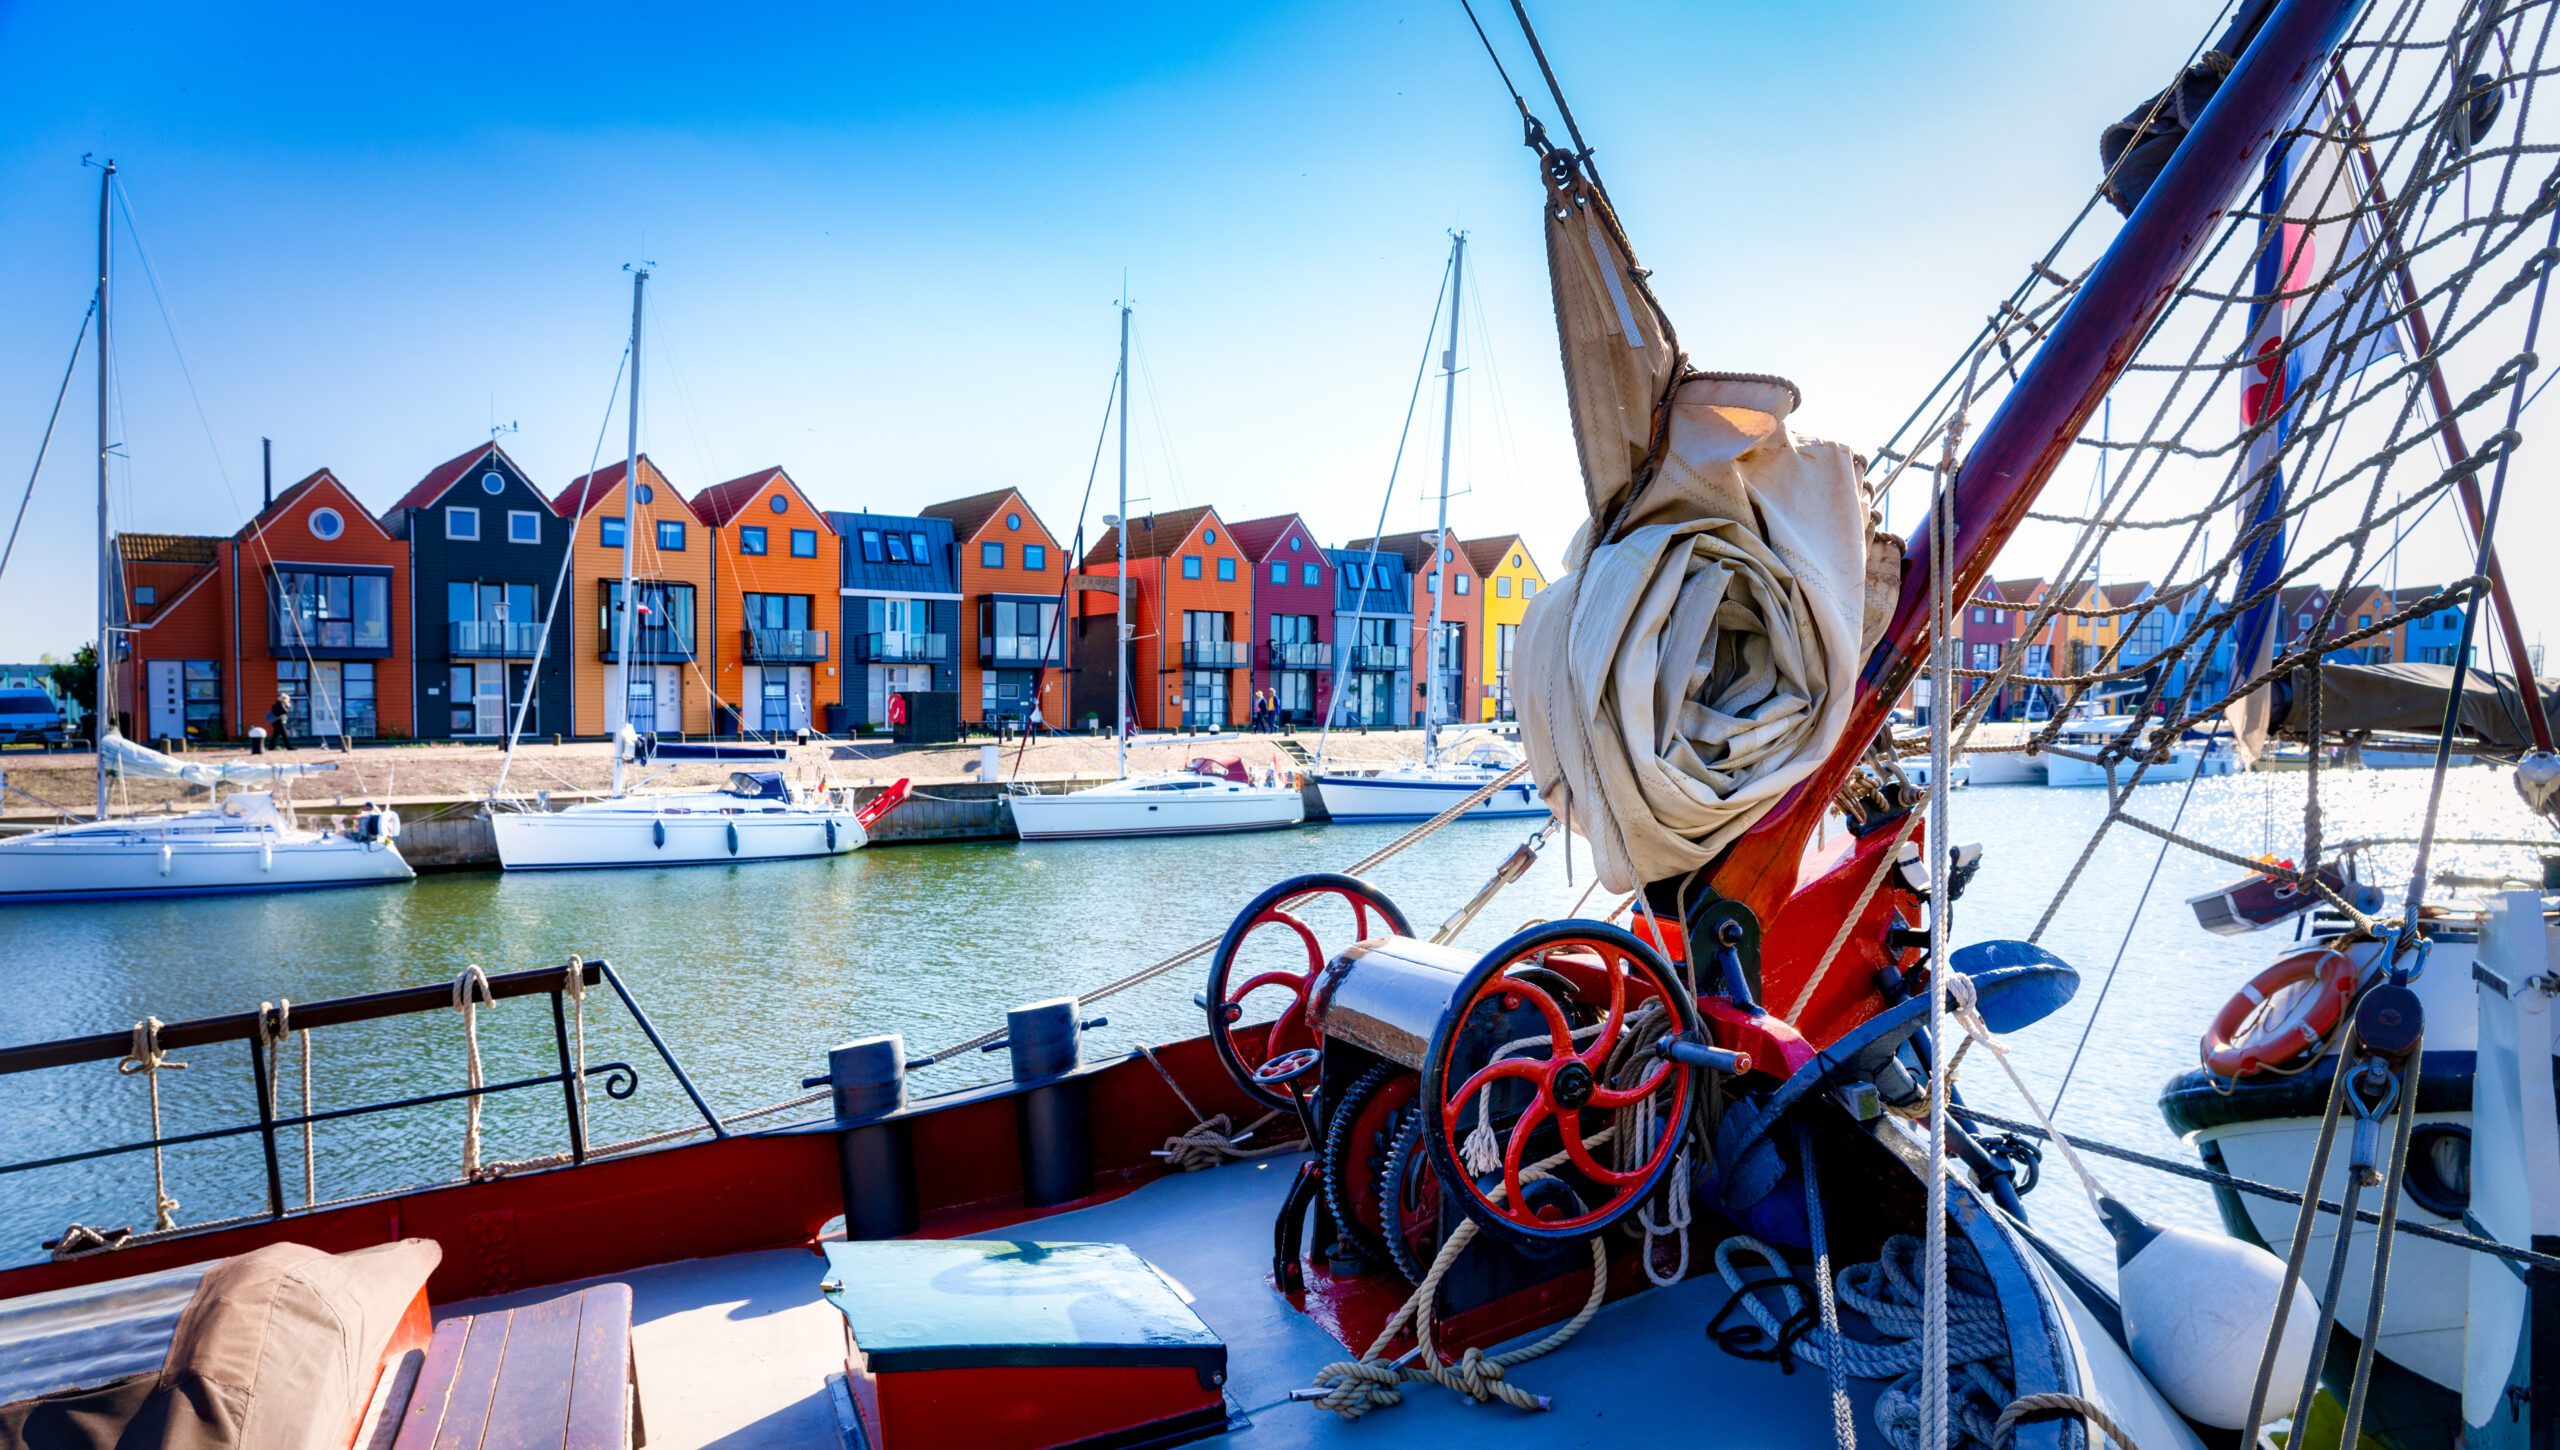 Stavoren waterfront on the IJsselmeer, province of Friesland, Netherlands